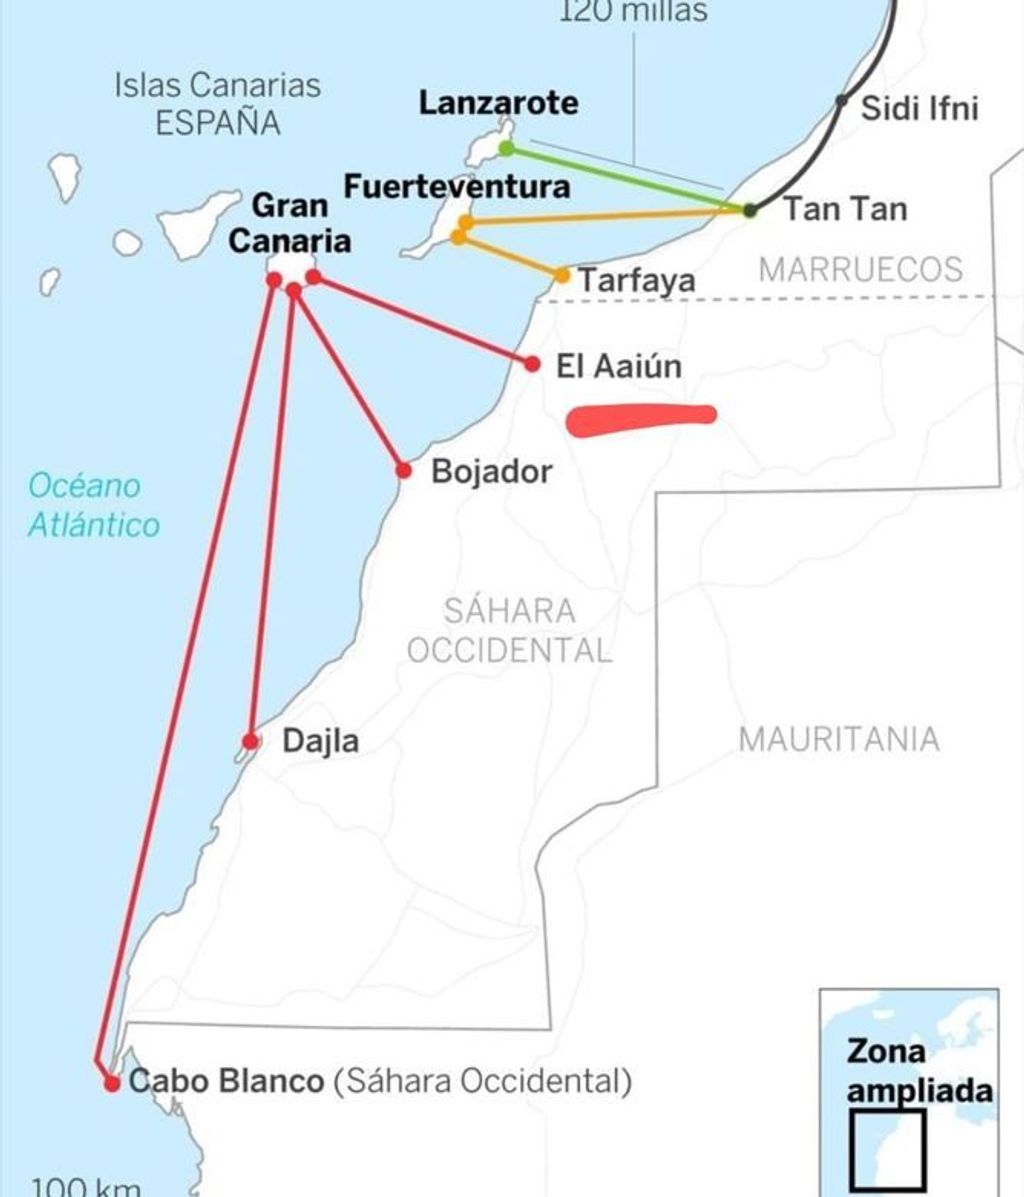 Rutas migratorias hacia Canarias